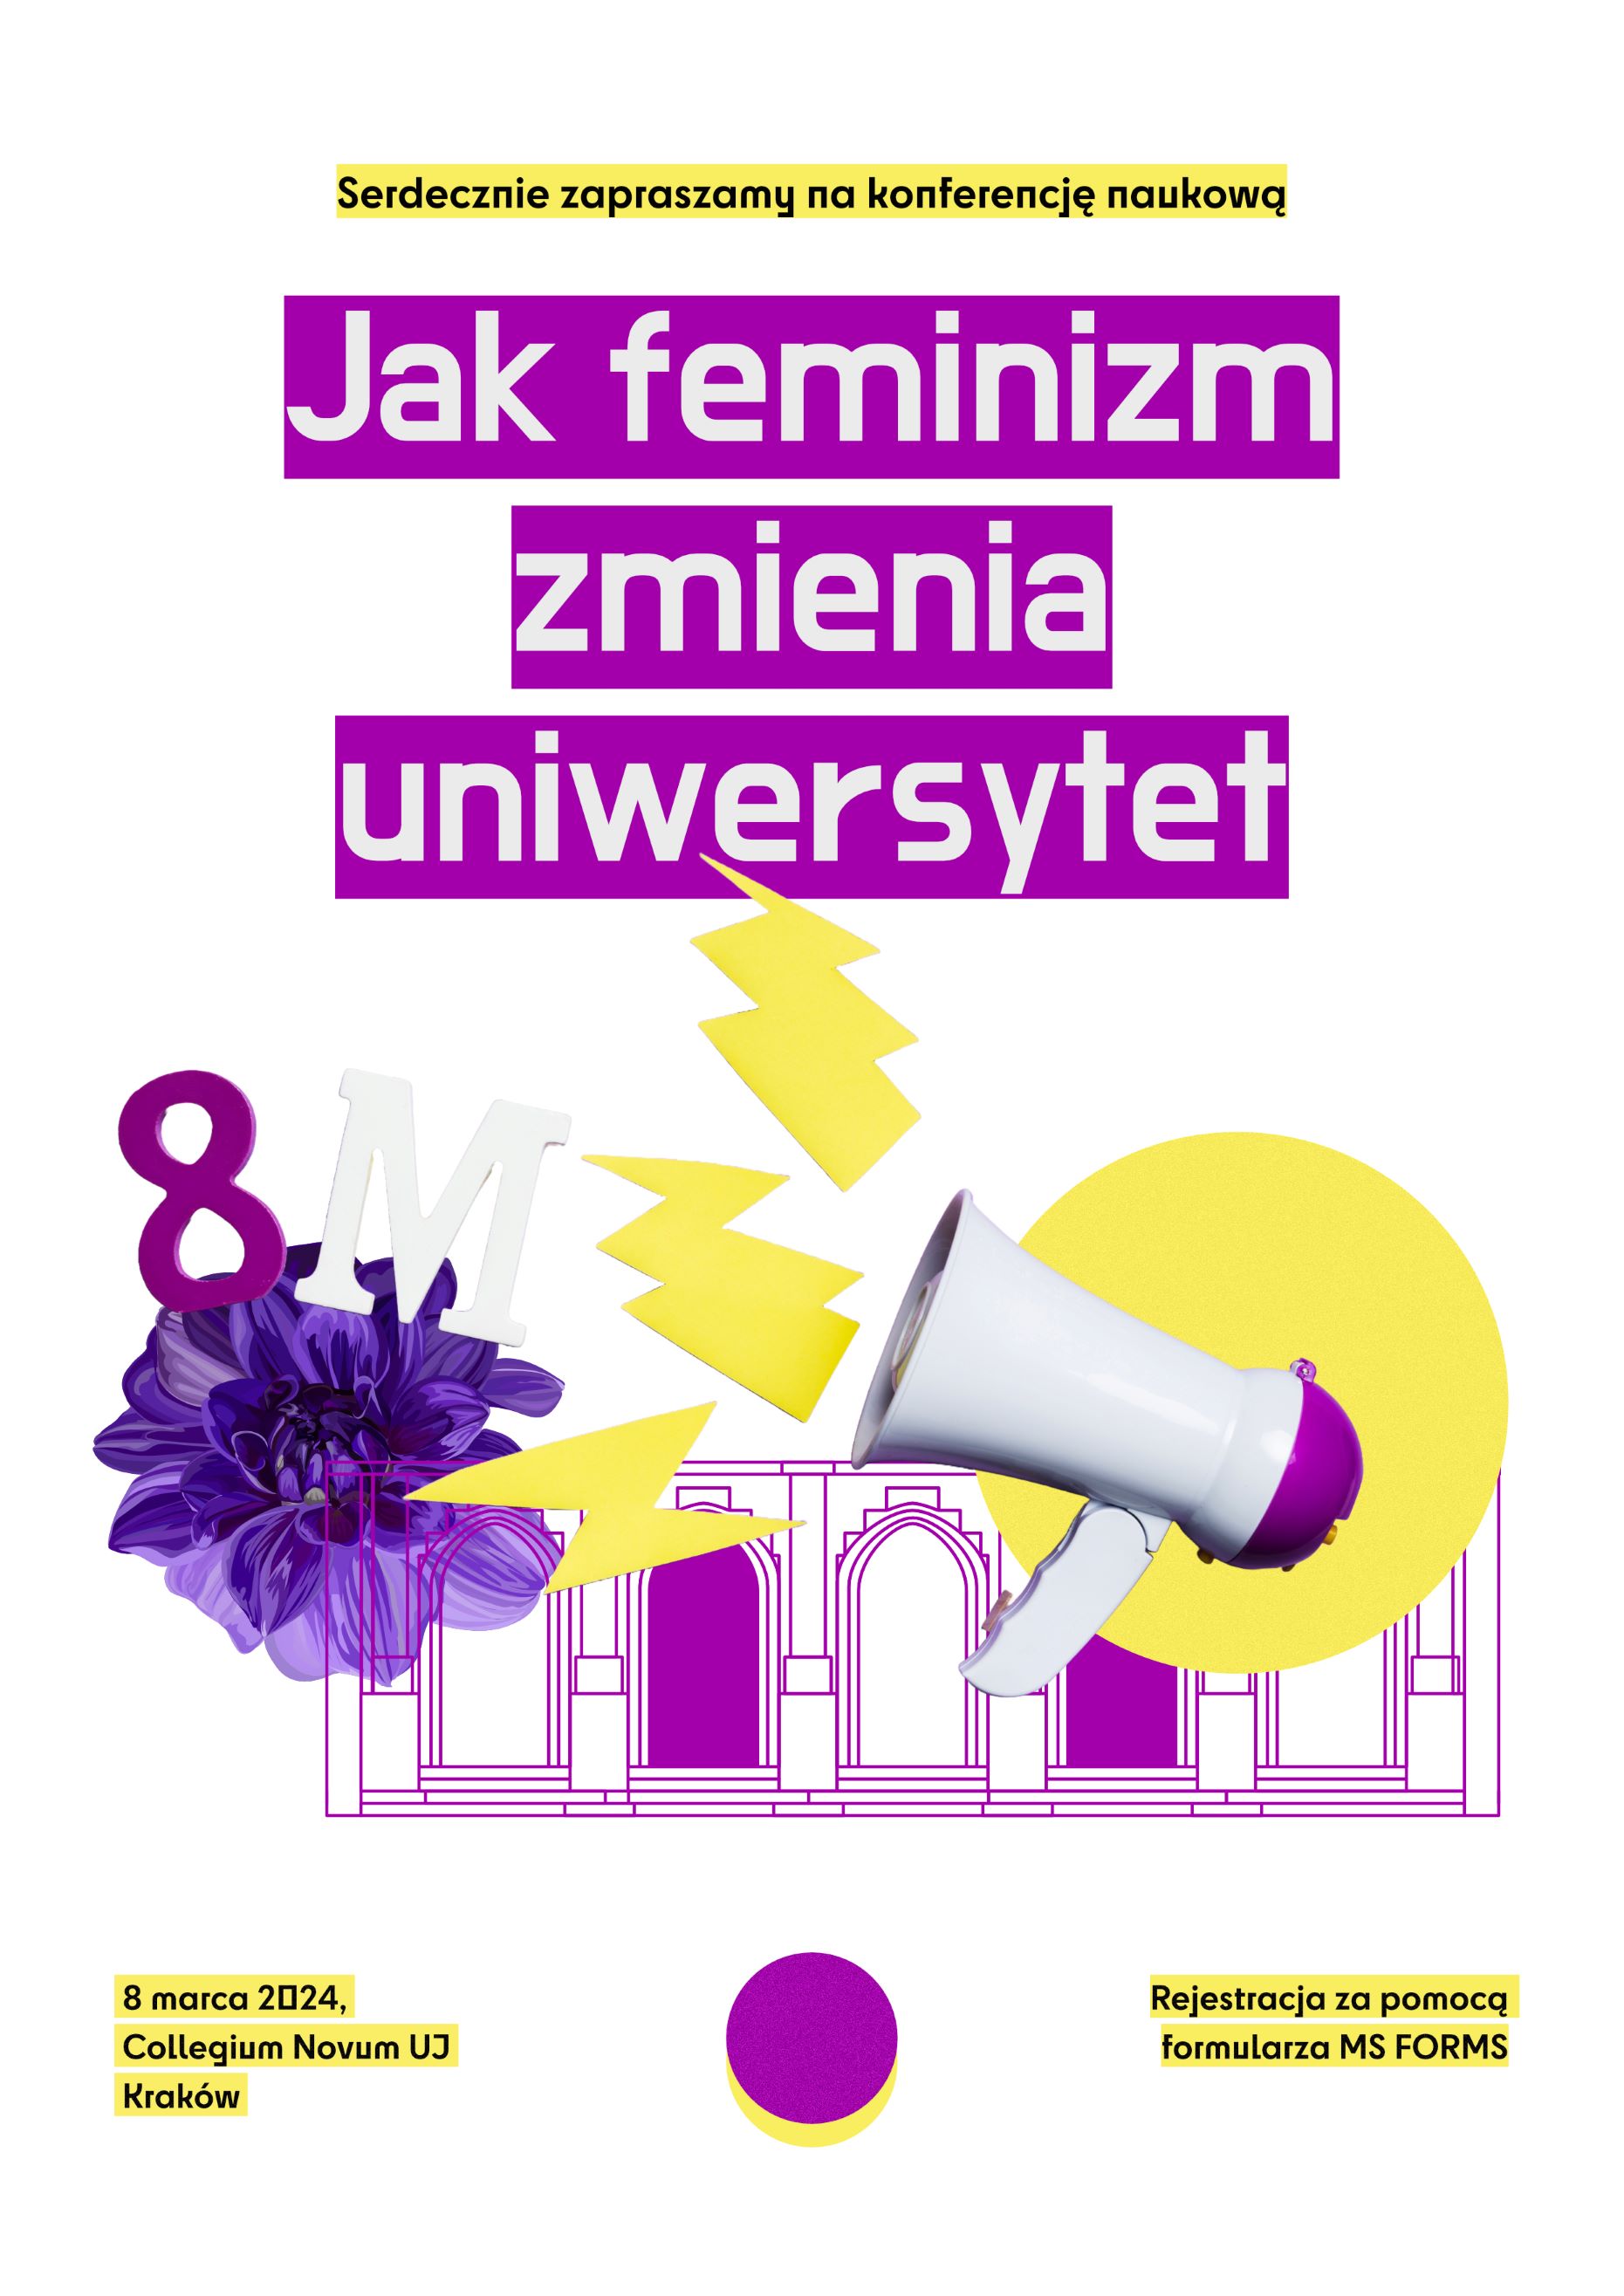 plakat wydarzenia, na którym znajduje się tytuł "Jak feminizm zmienia uniwersytet", informacja o dacie i miejscu wydarzenia oraz komunikat dotyczący konieczności rejestracji poprzez dedykowany formularz